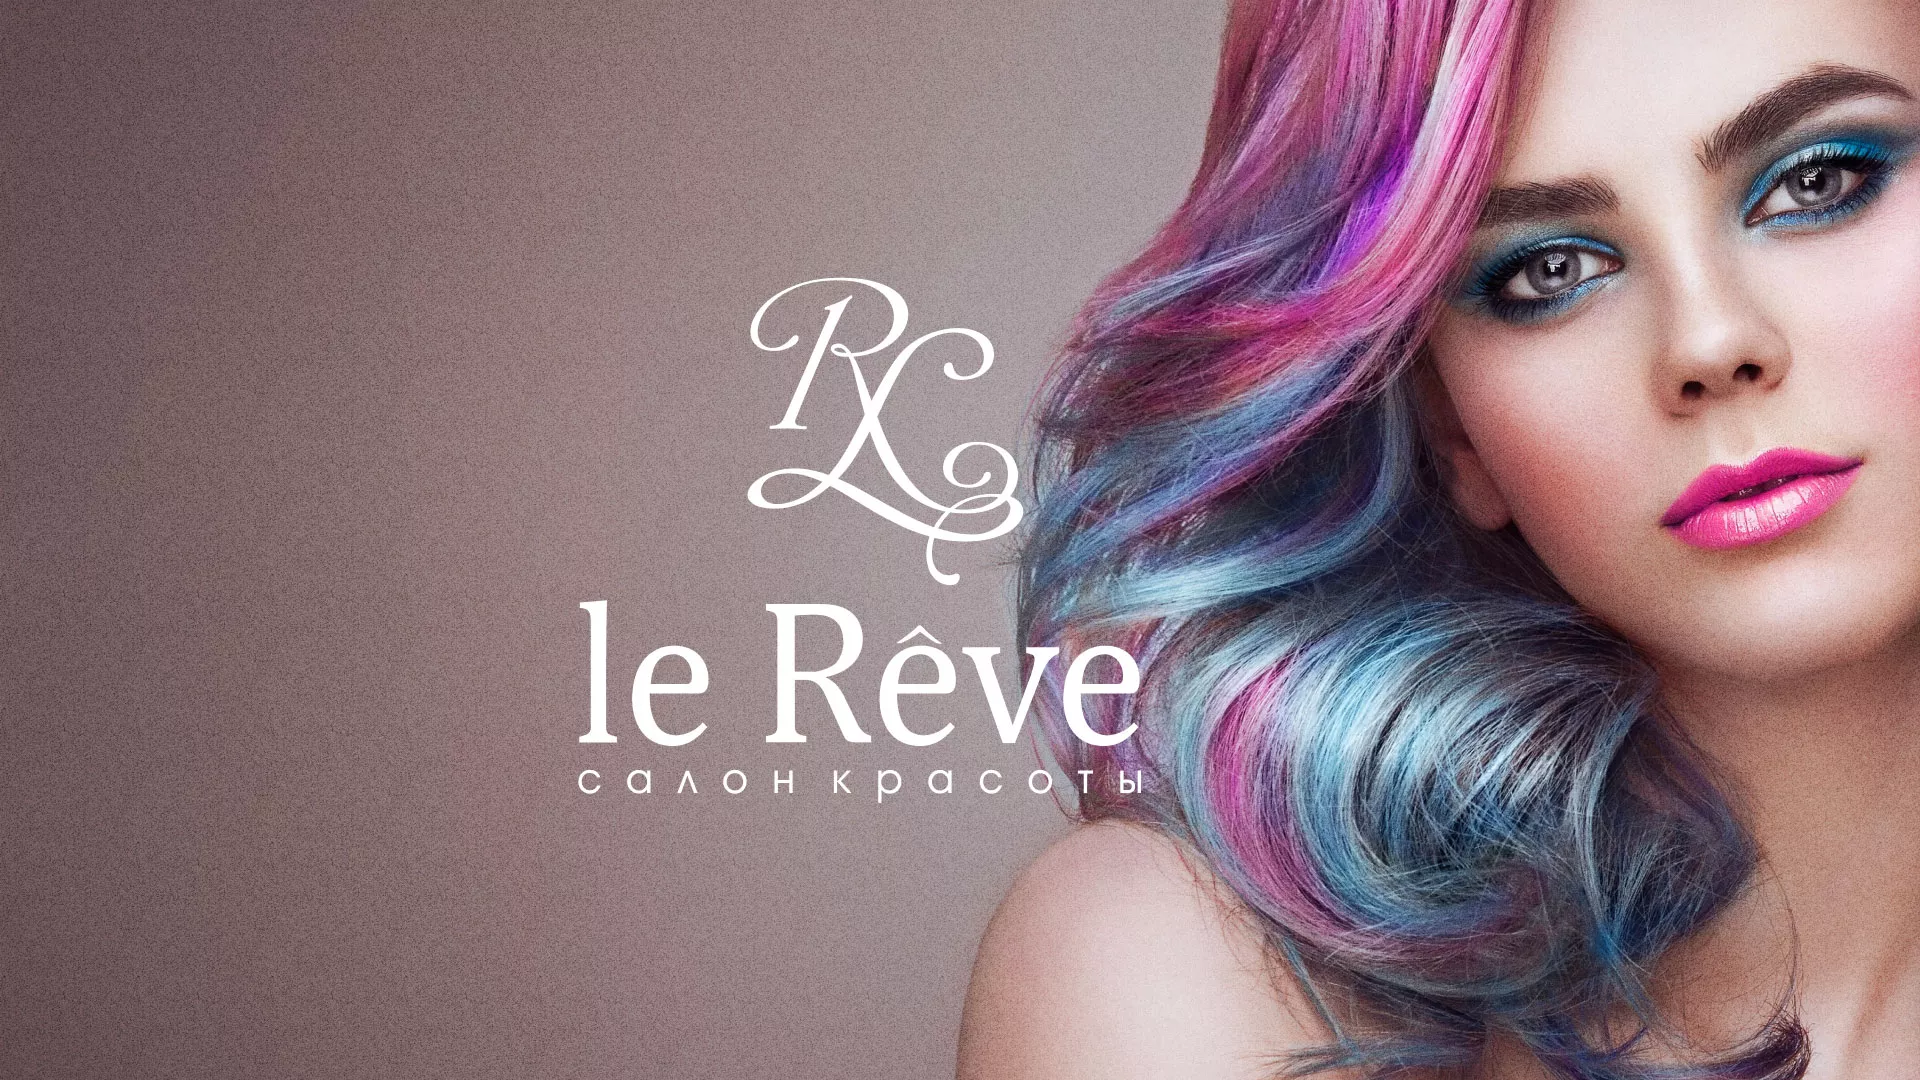 Создание сайта для салона красоты «Le Reve» в Королёве